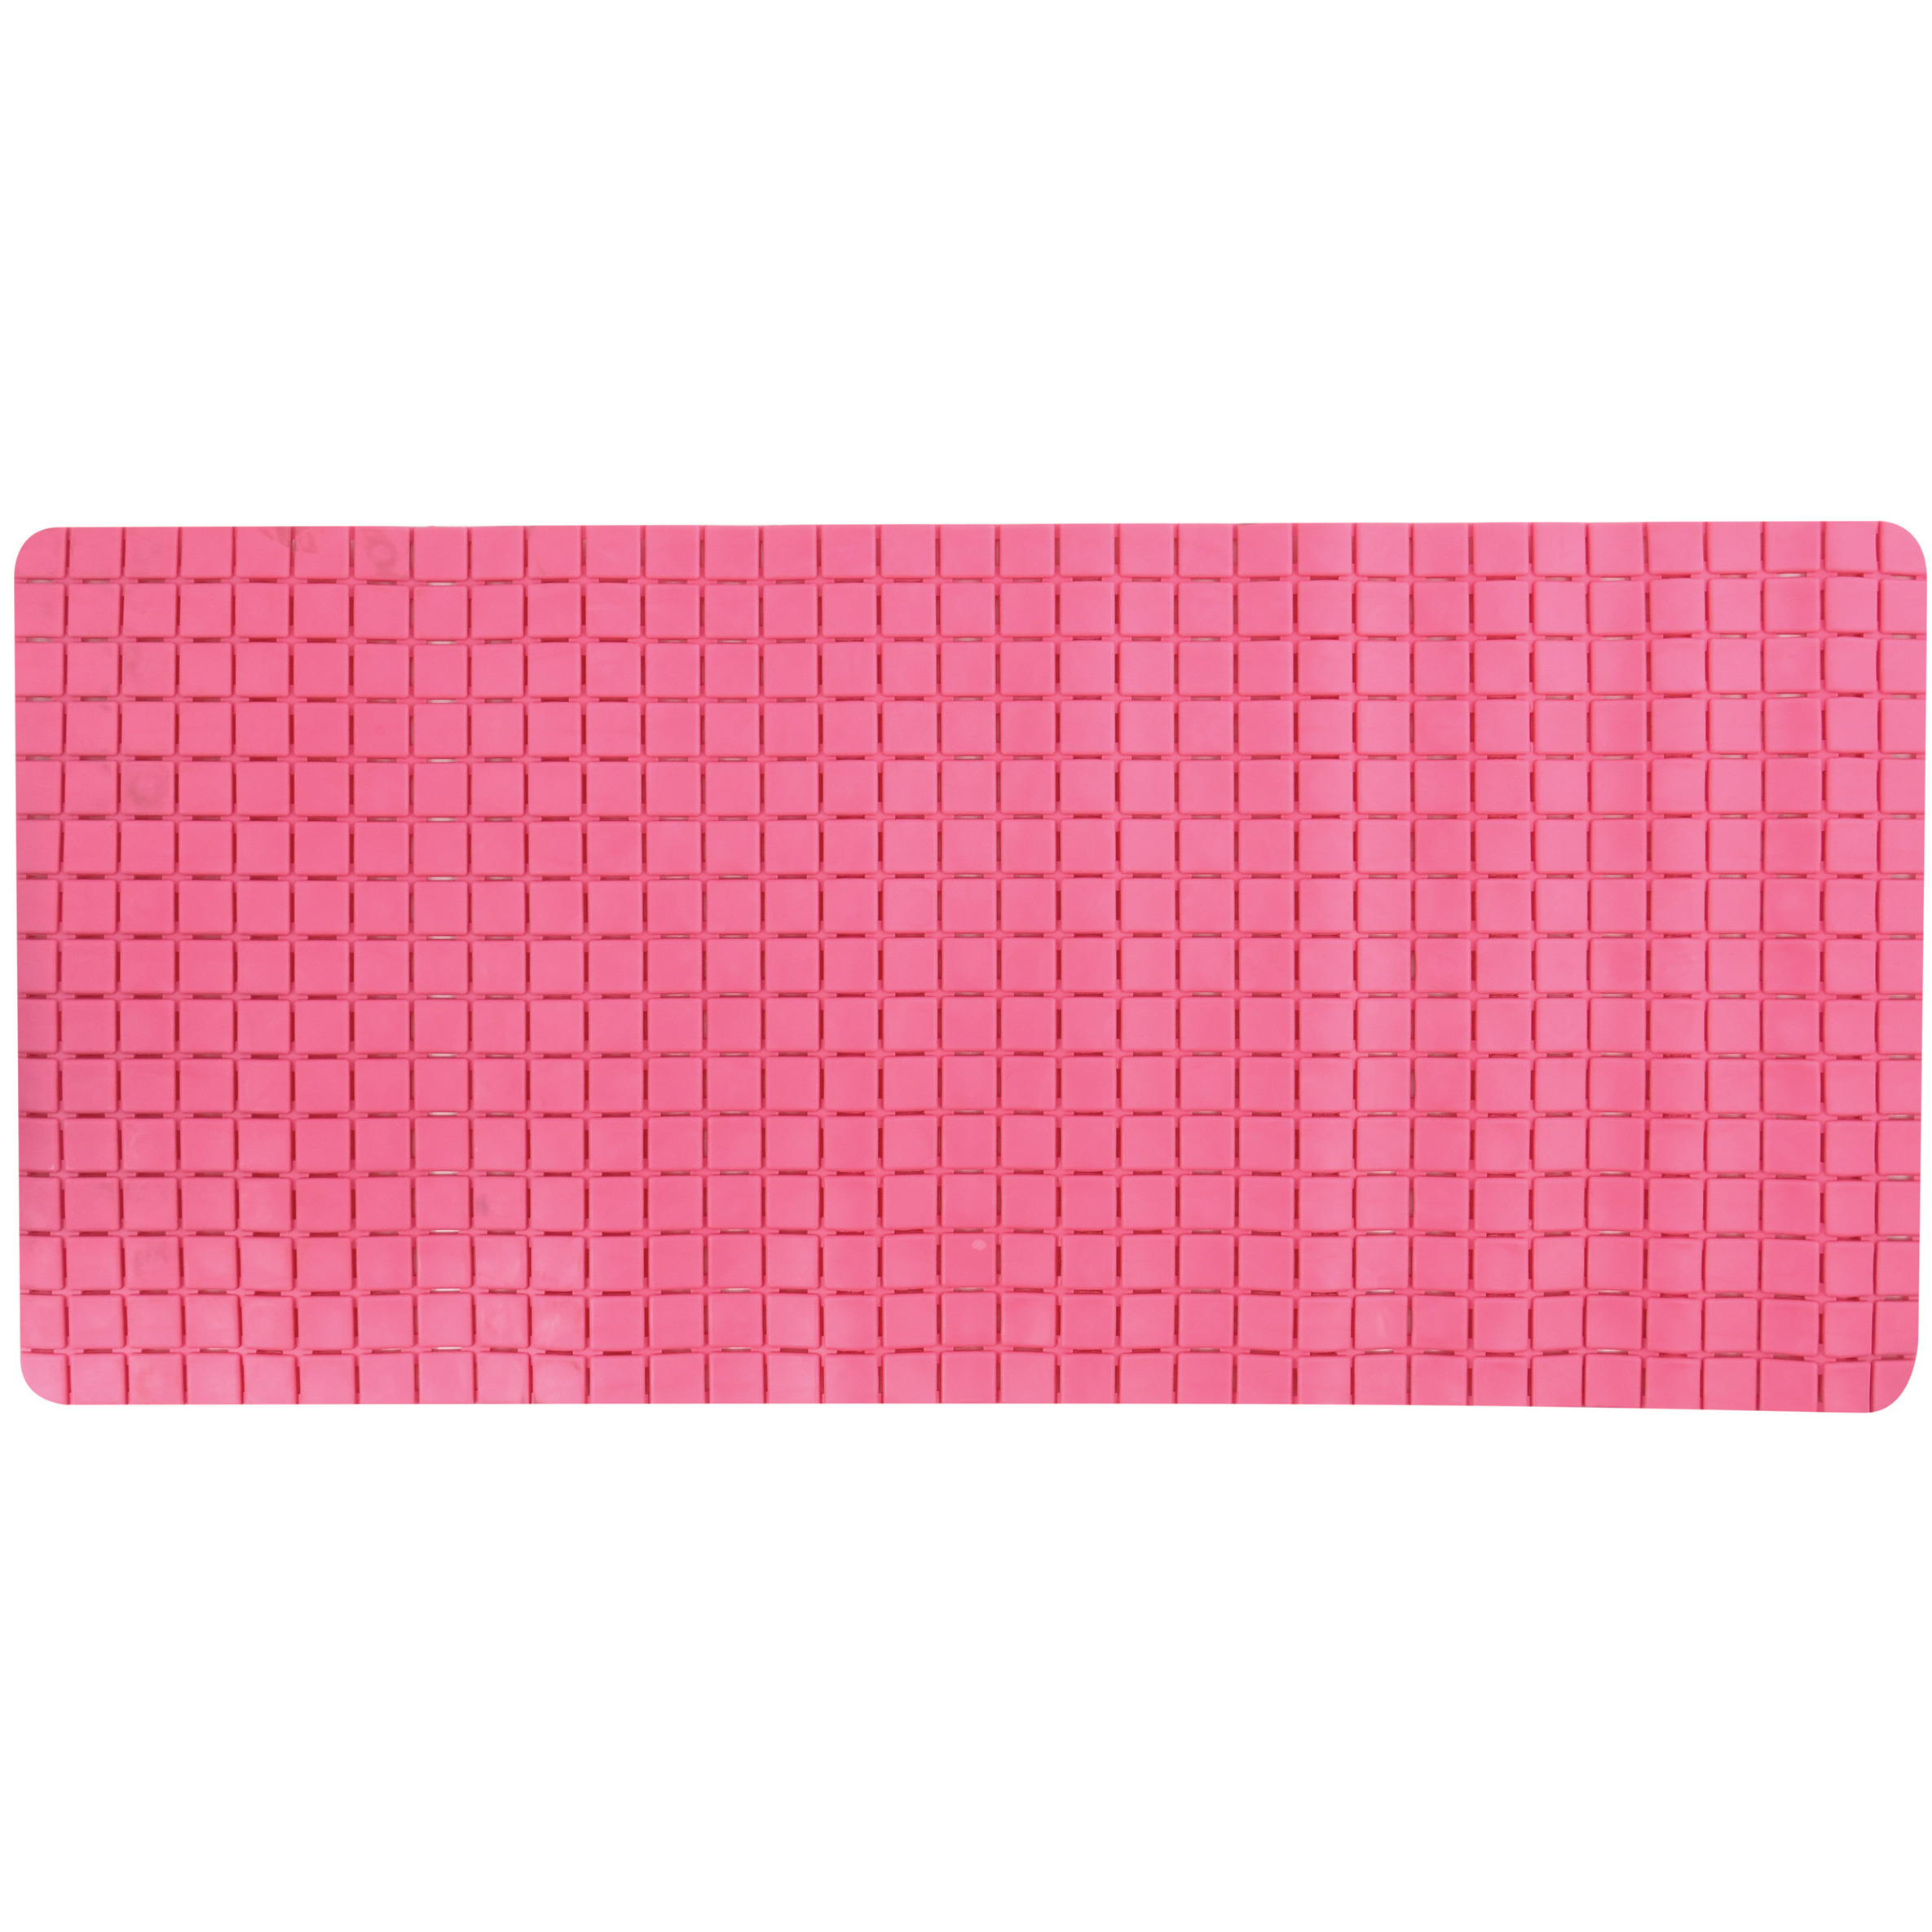 Douche-bad anti-slip mat badkamer rubber fuchsia roze 76 x 36 cm rechthoek